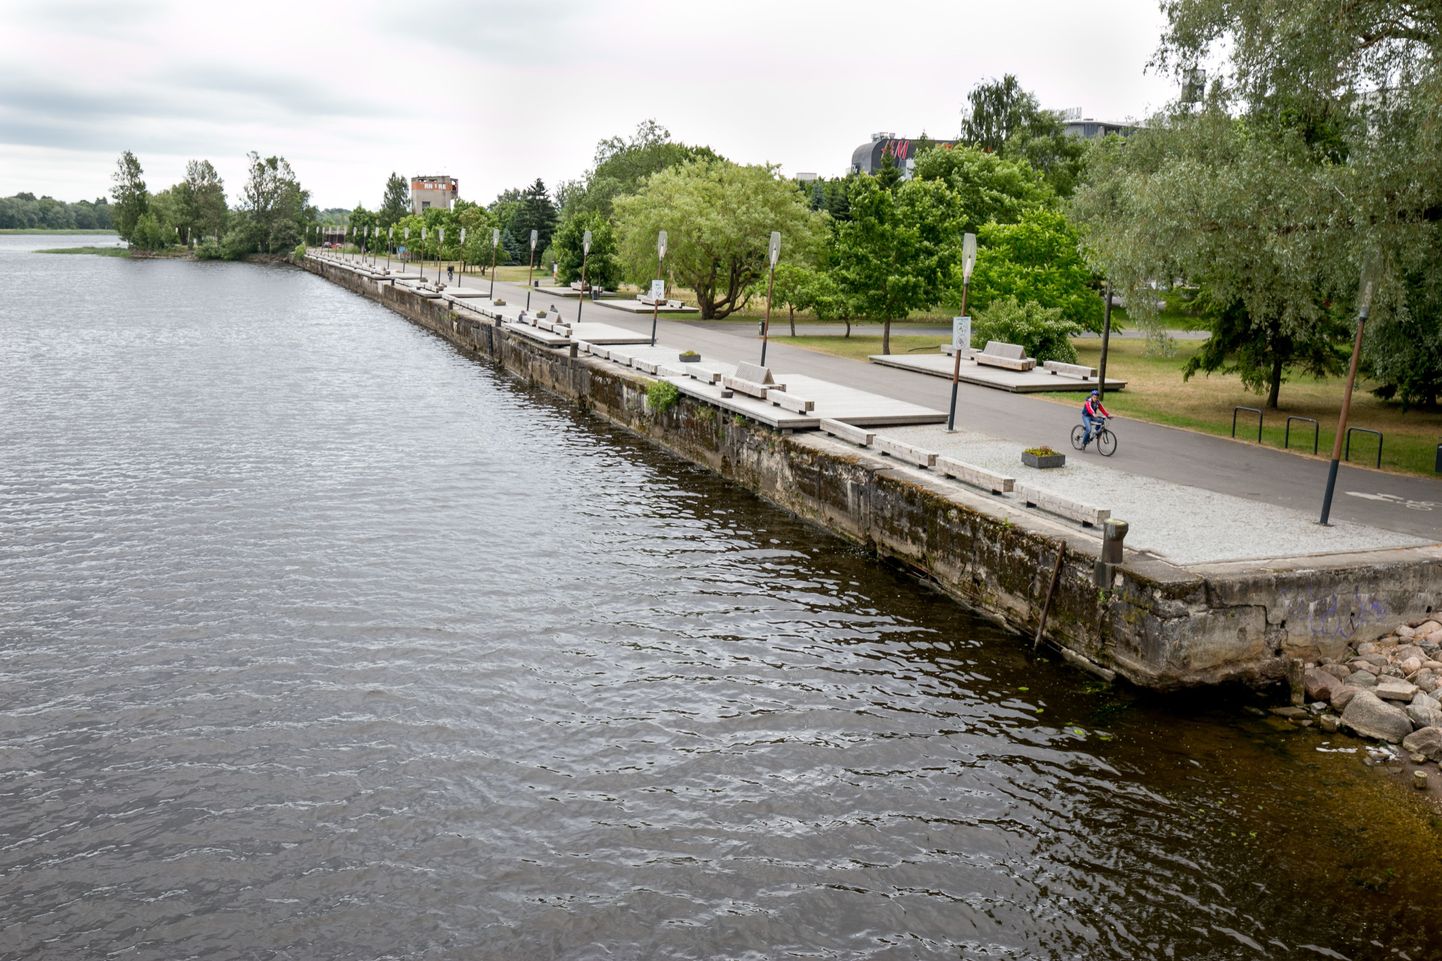 Lääne päästekeskuse ennetusbüroo tegi Pärnu linnavalitsusele ettepaneku paigaldada kai äärde piirded ja kindlate vahemaade tagant redeli või köie, millest vette kukkunud hädalised saaksid haarata.